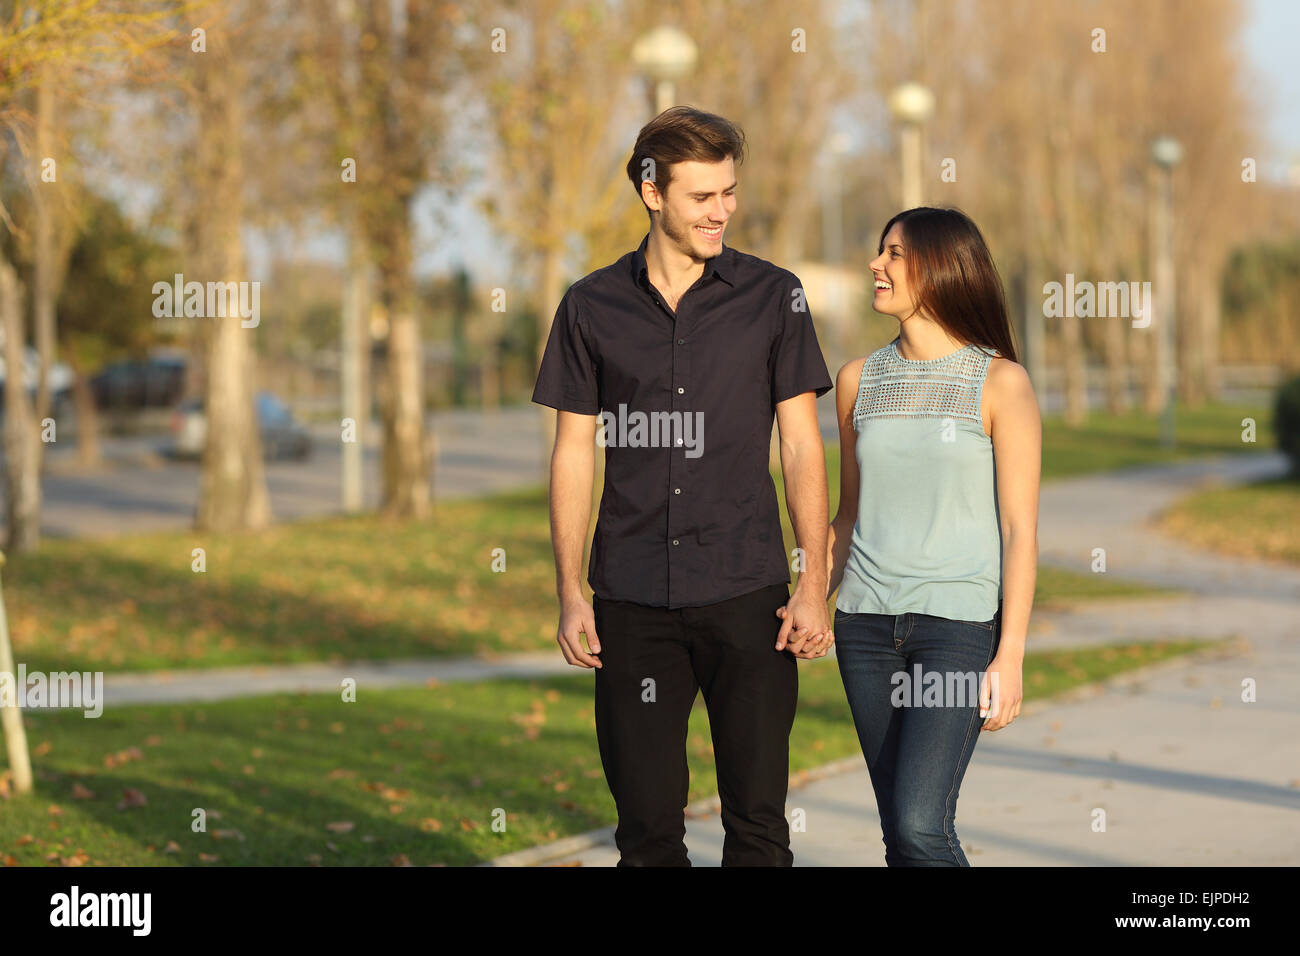 Glückliches Paar lachen bei einem Spaziergang in einem park Stockfoto